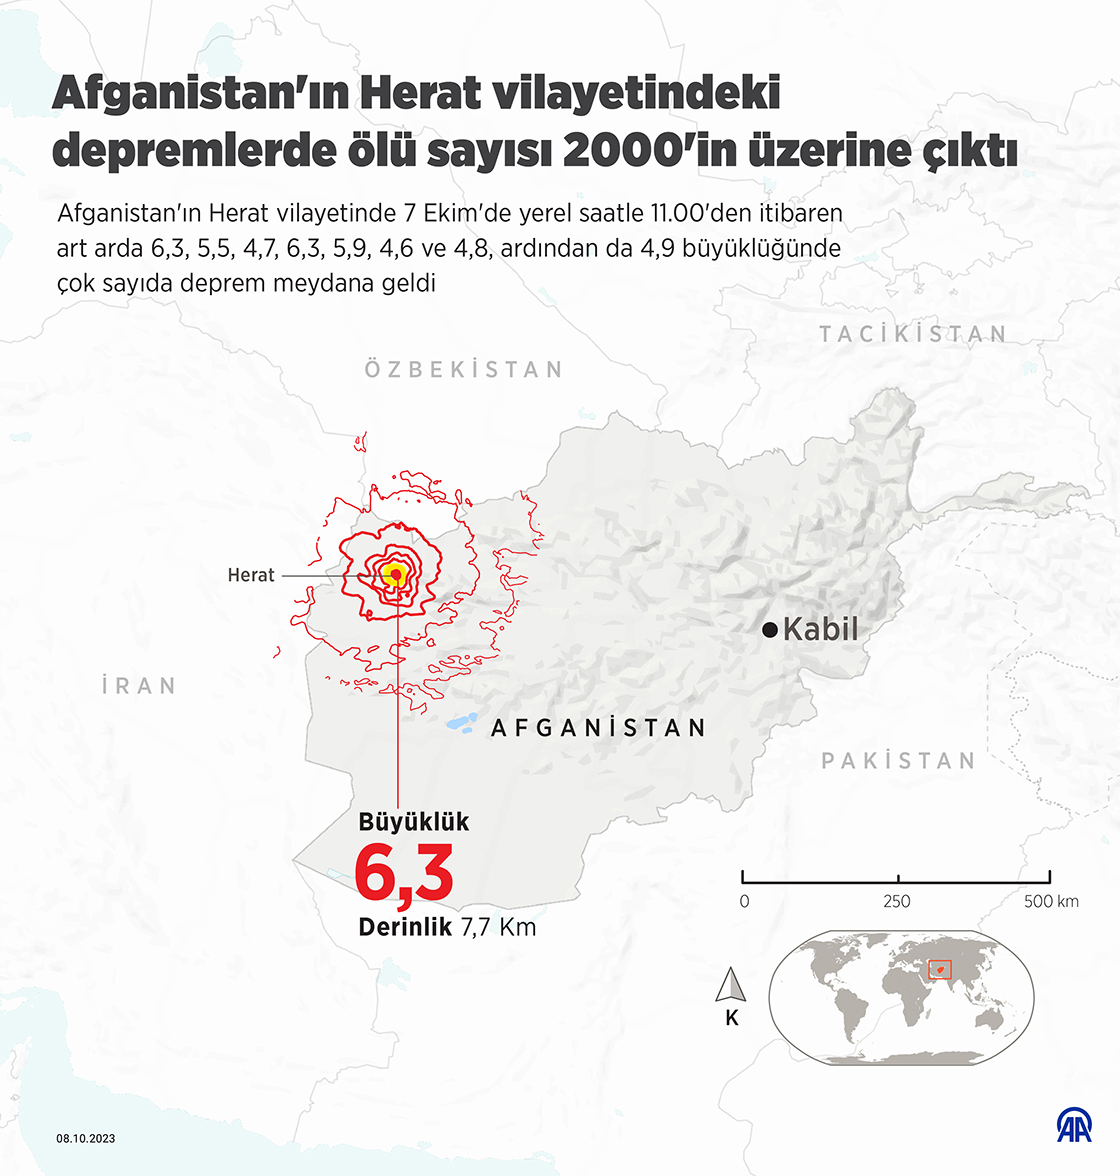 Afganistan'ın Herat vilayetindeki depremlerde ölü sayısı 2000'in üzerine çıktı